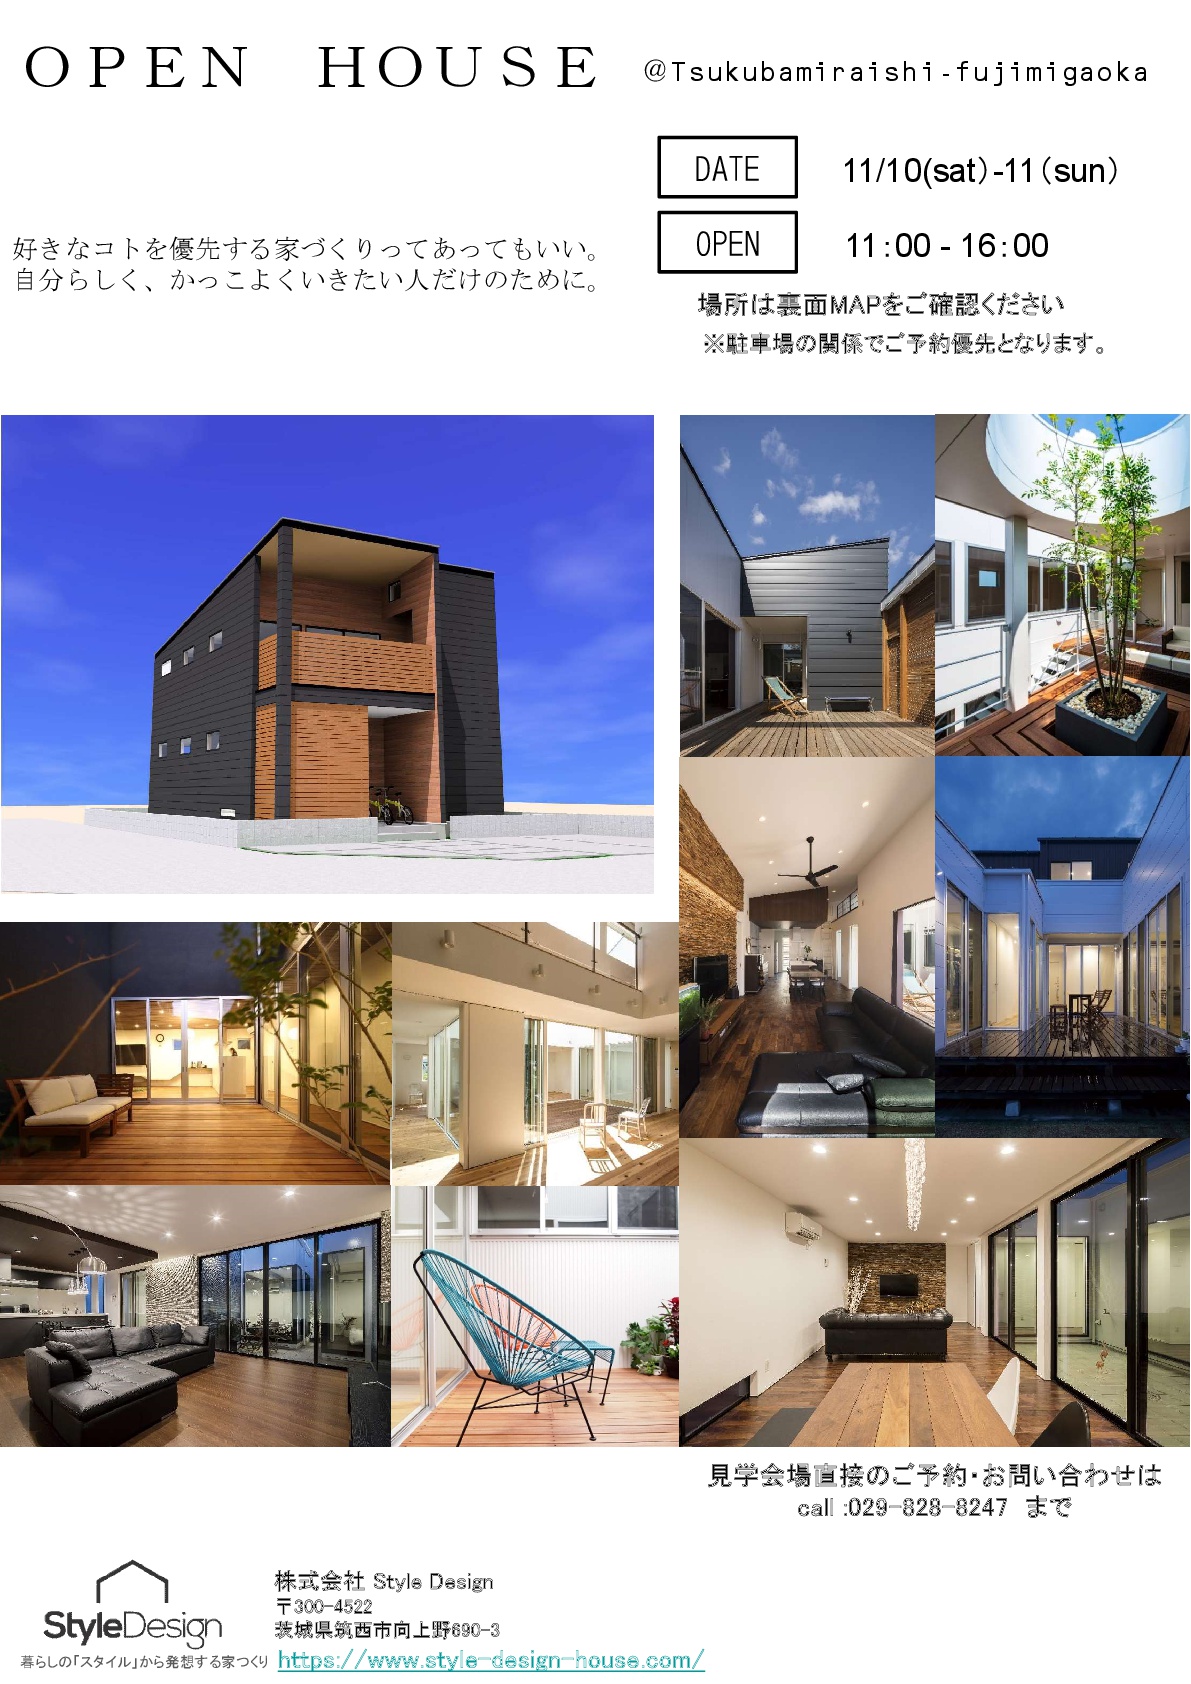 OPEN HOUSE「好きなコトを優先する家」in 茨城県つくばみらい市富士見ヶ丘